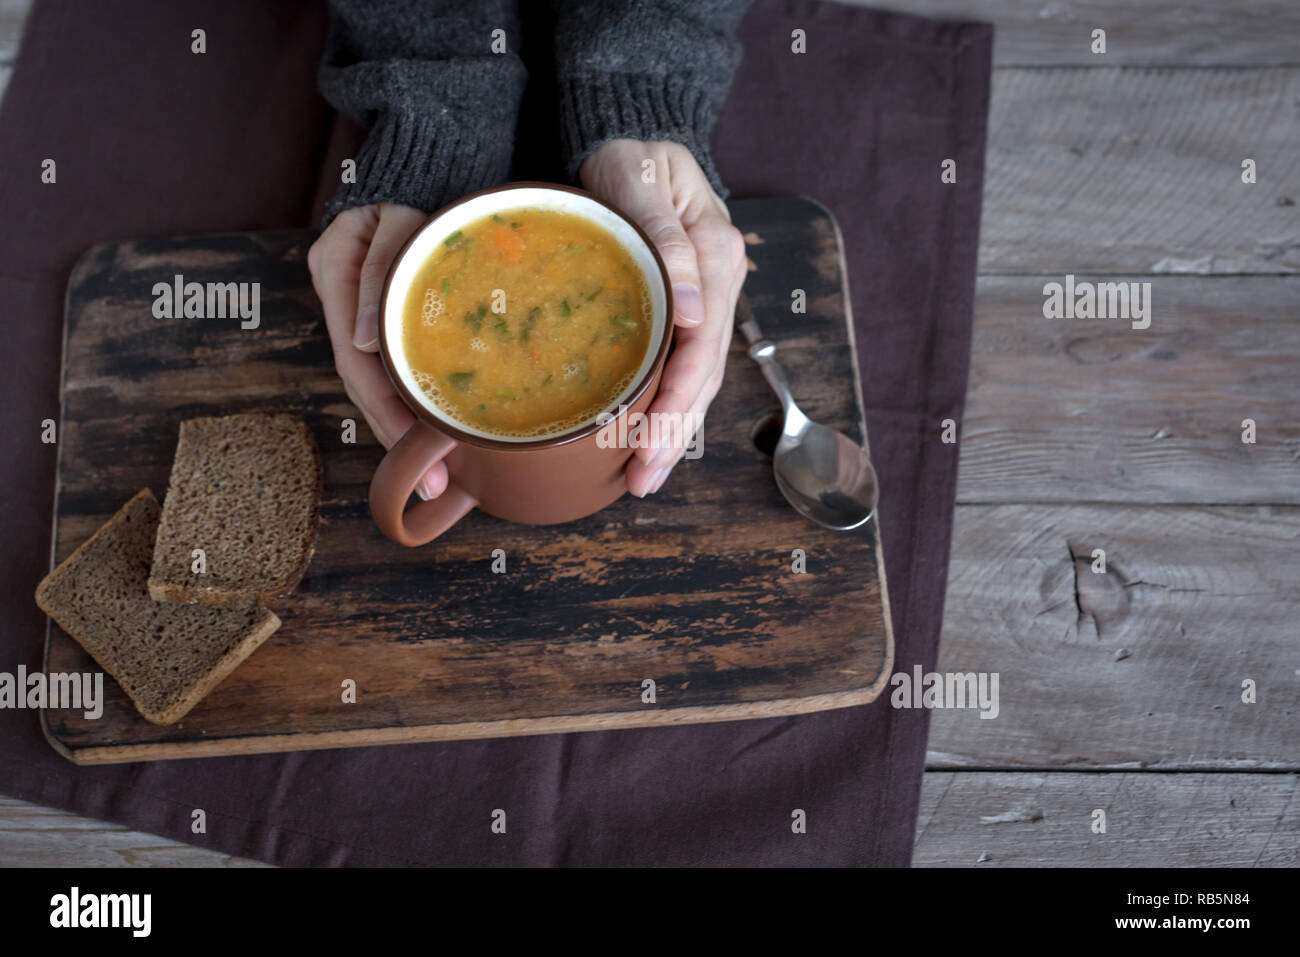 Frau Hände halten Tasse Gemüsesuppe auf Holzuntergrund - gesunde Winter vegetarisches Essen, gemütliche wärmende Suppe. Stockfoto